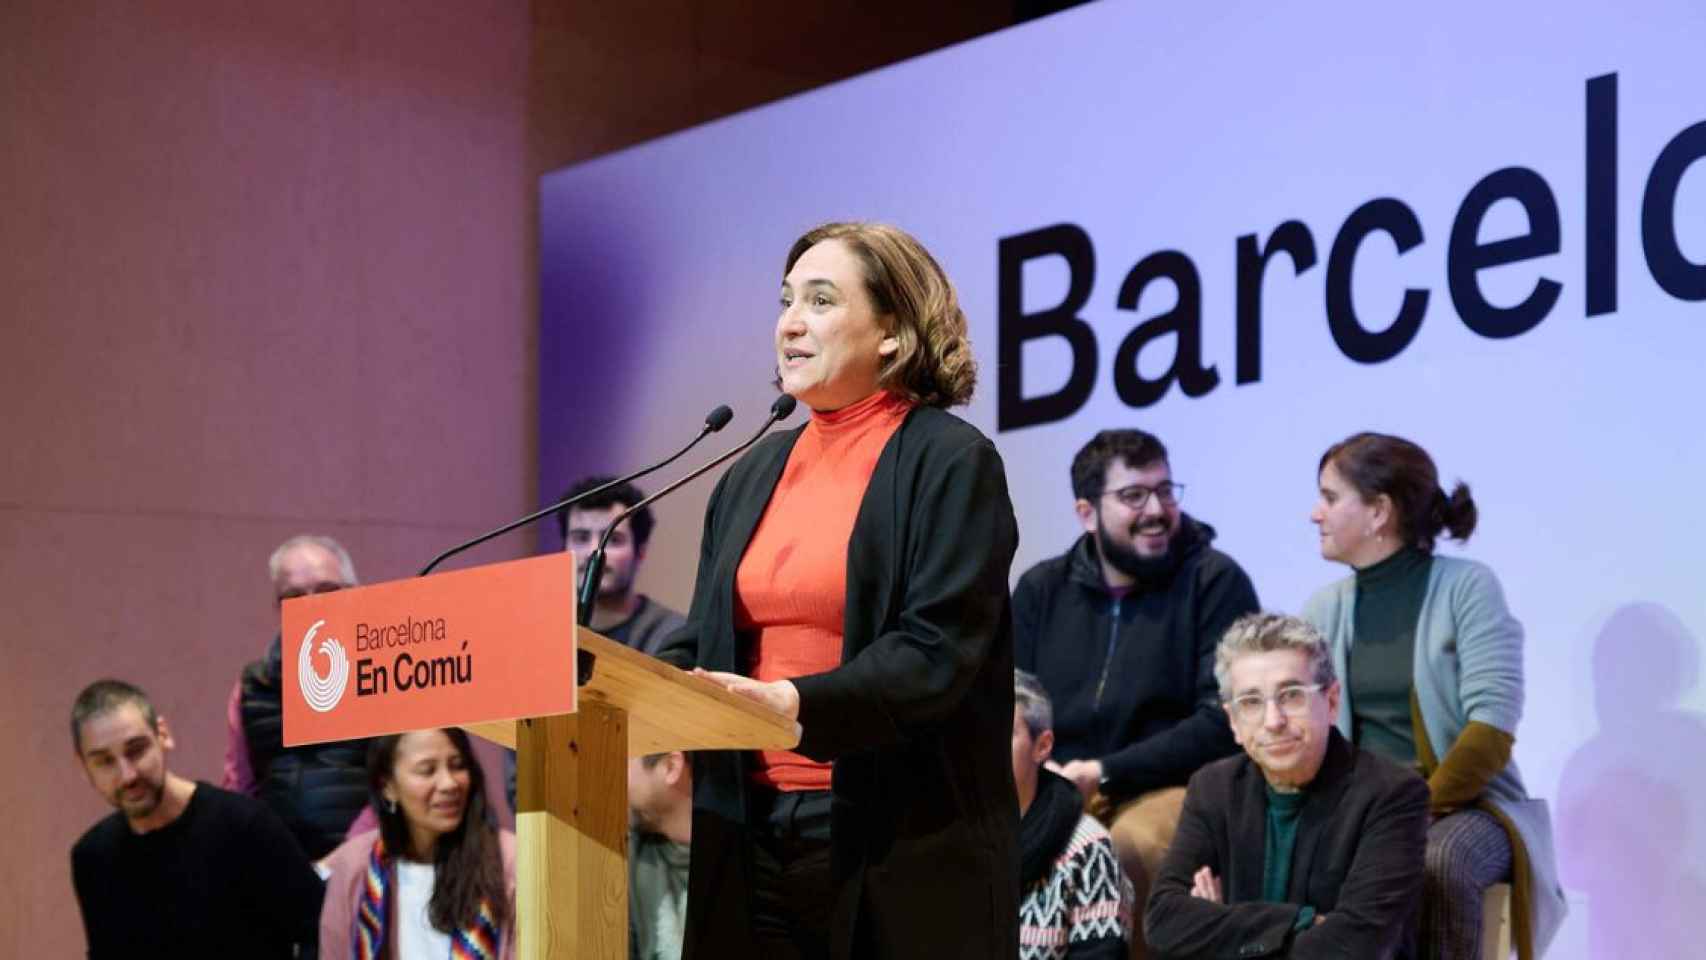 La alcaldesa de Barcelona y candidata a la reelección presenta a los 20 primeros candidatos de su lista por BComú el pasado sábado / LORENA SOPÊNA - EUROPA PRESS